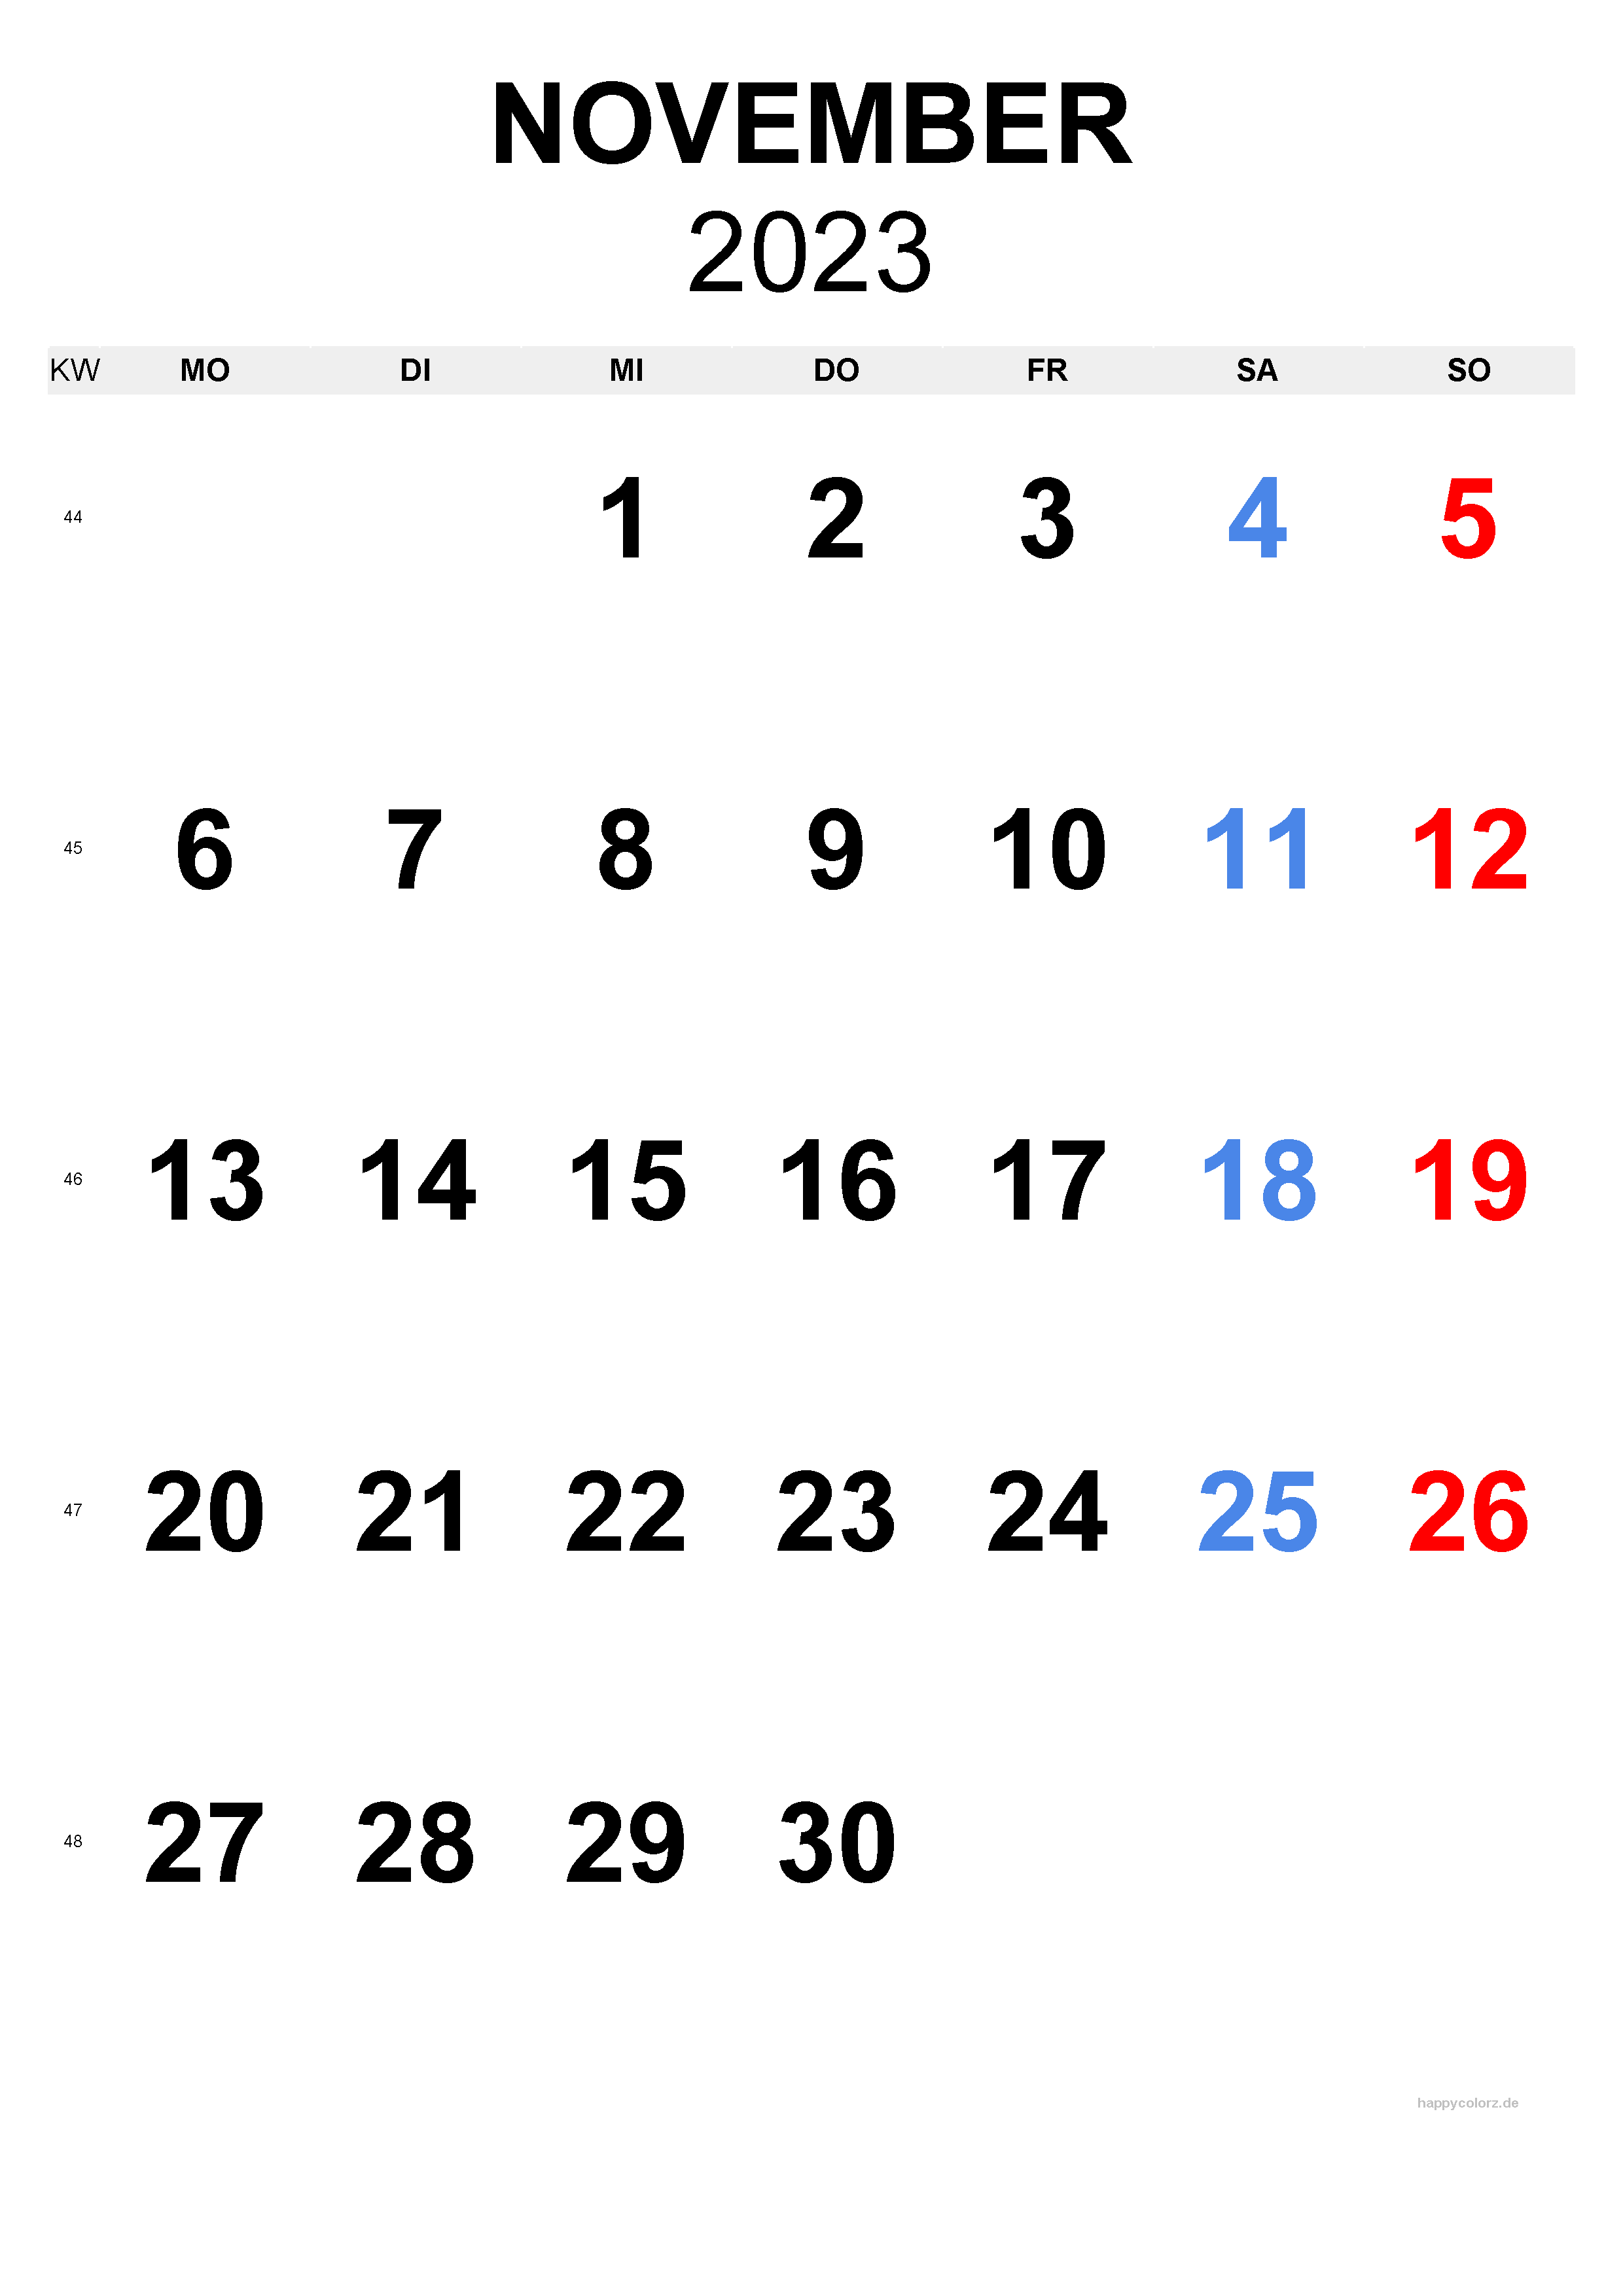 November 2023 Kalender - Hochformat, kostenlos zum Ausdrucken